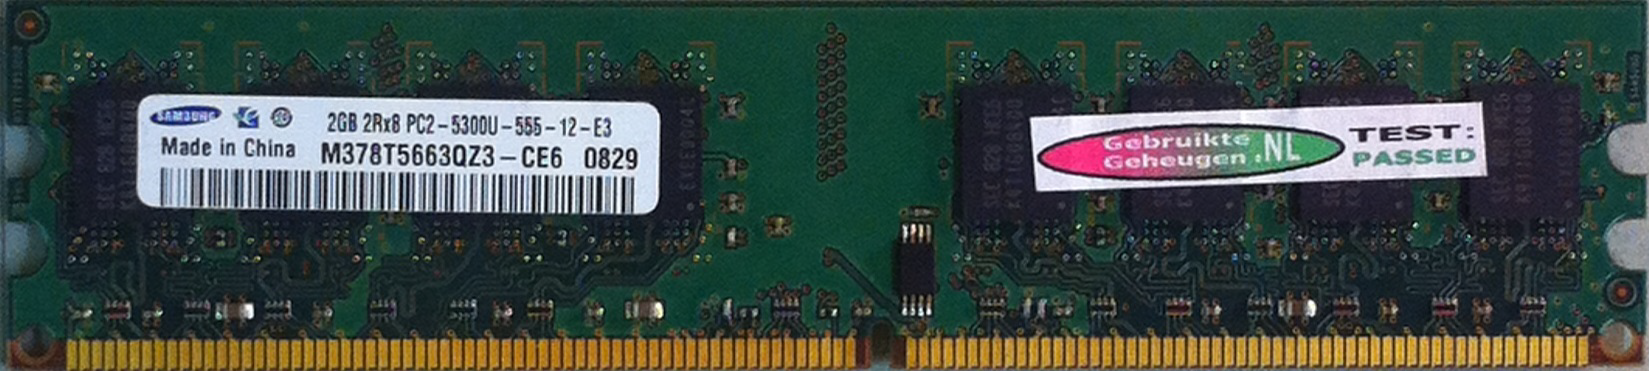 Samsung 2GB DDR2 PC2-5300U 667MHz